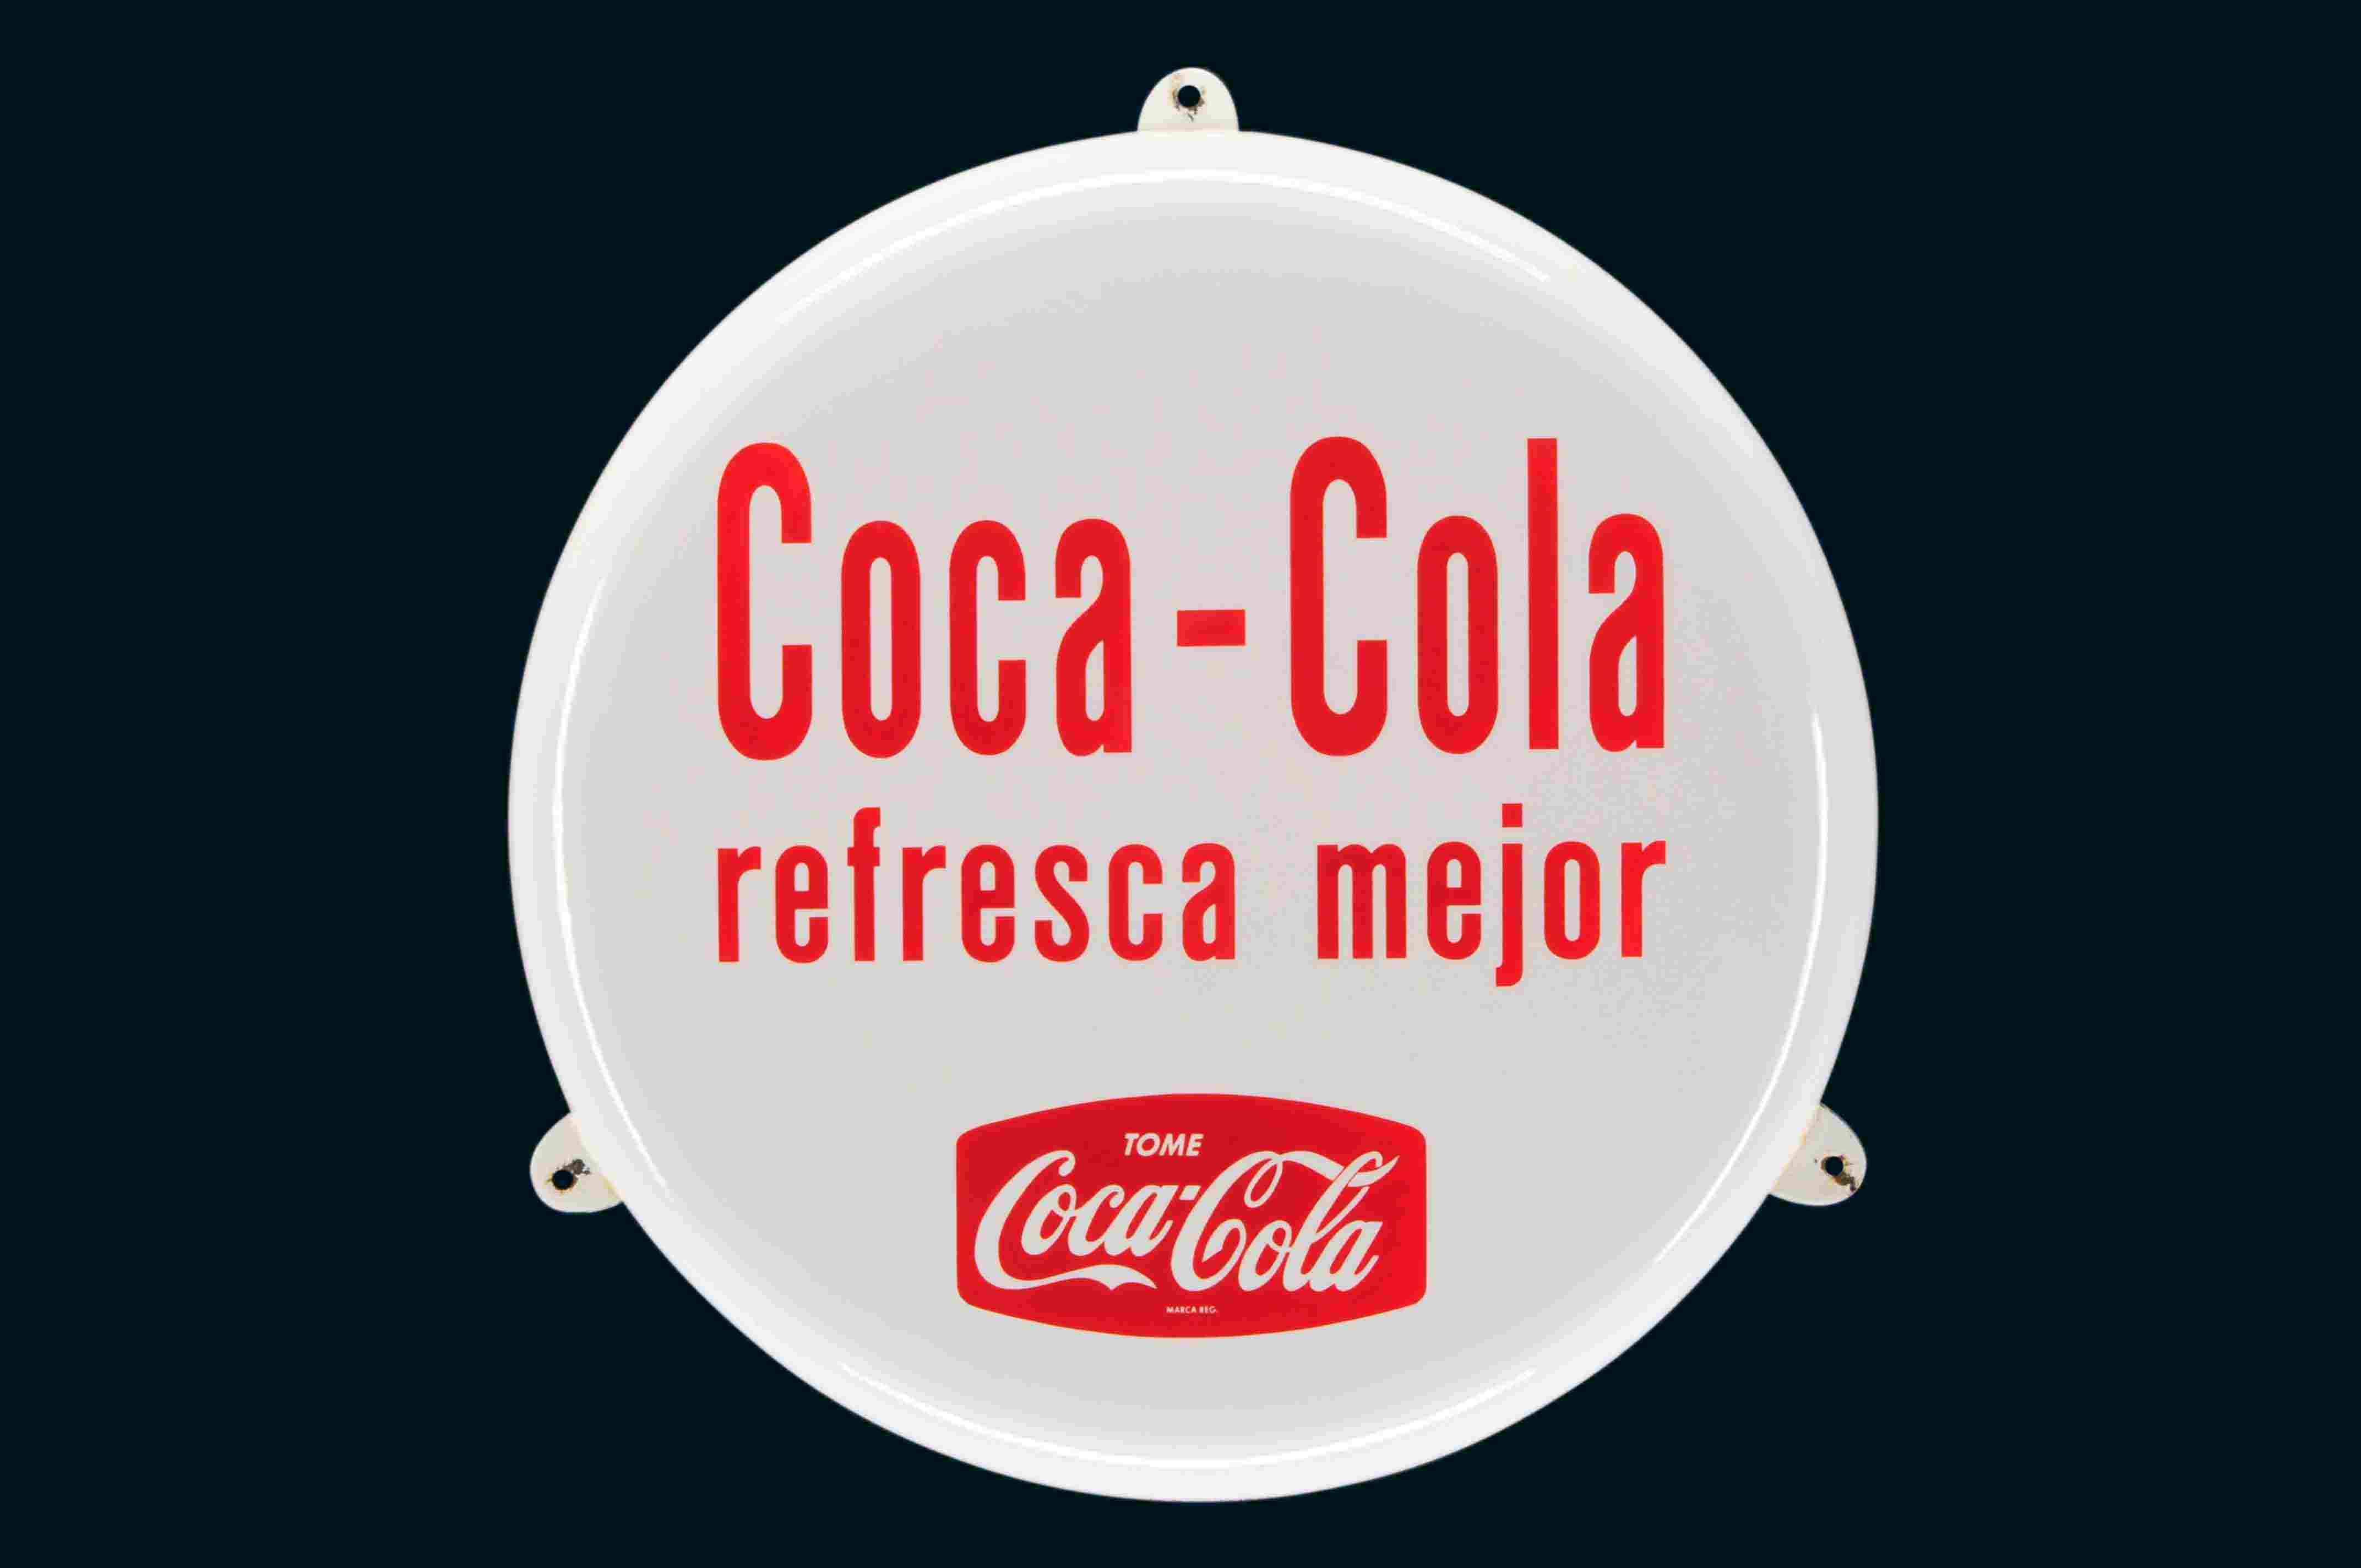 Coca-Cola refresca mejor 